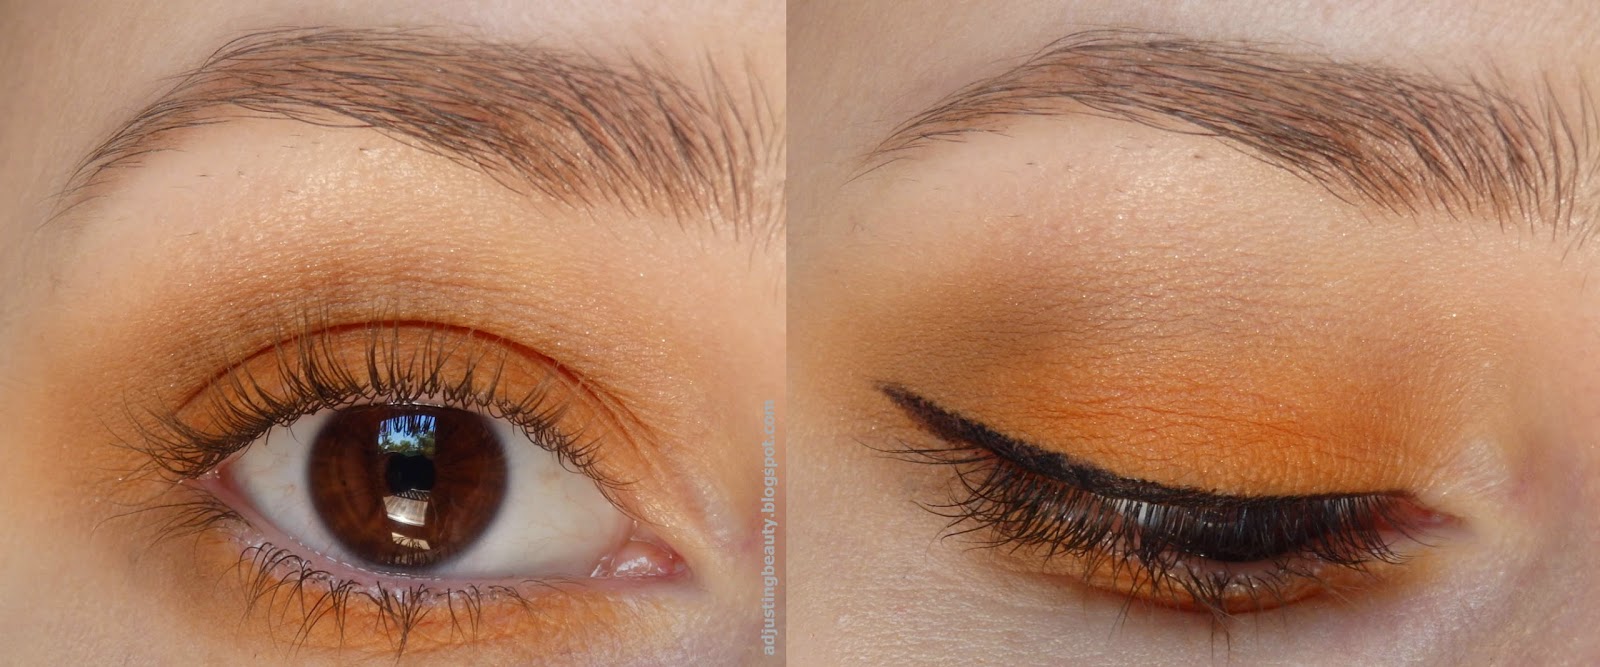 Orange Eye Makeup For The Summer Adjusting Beauty